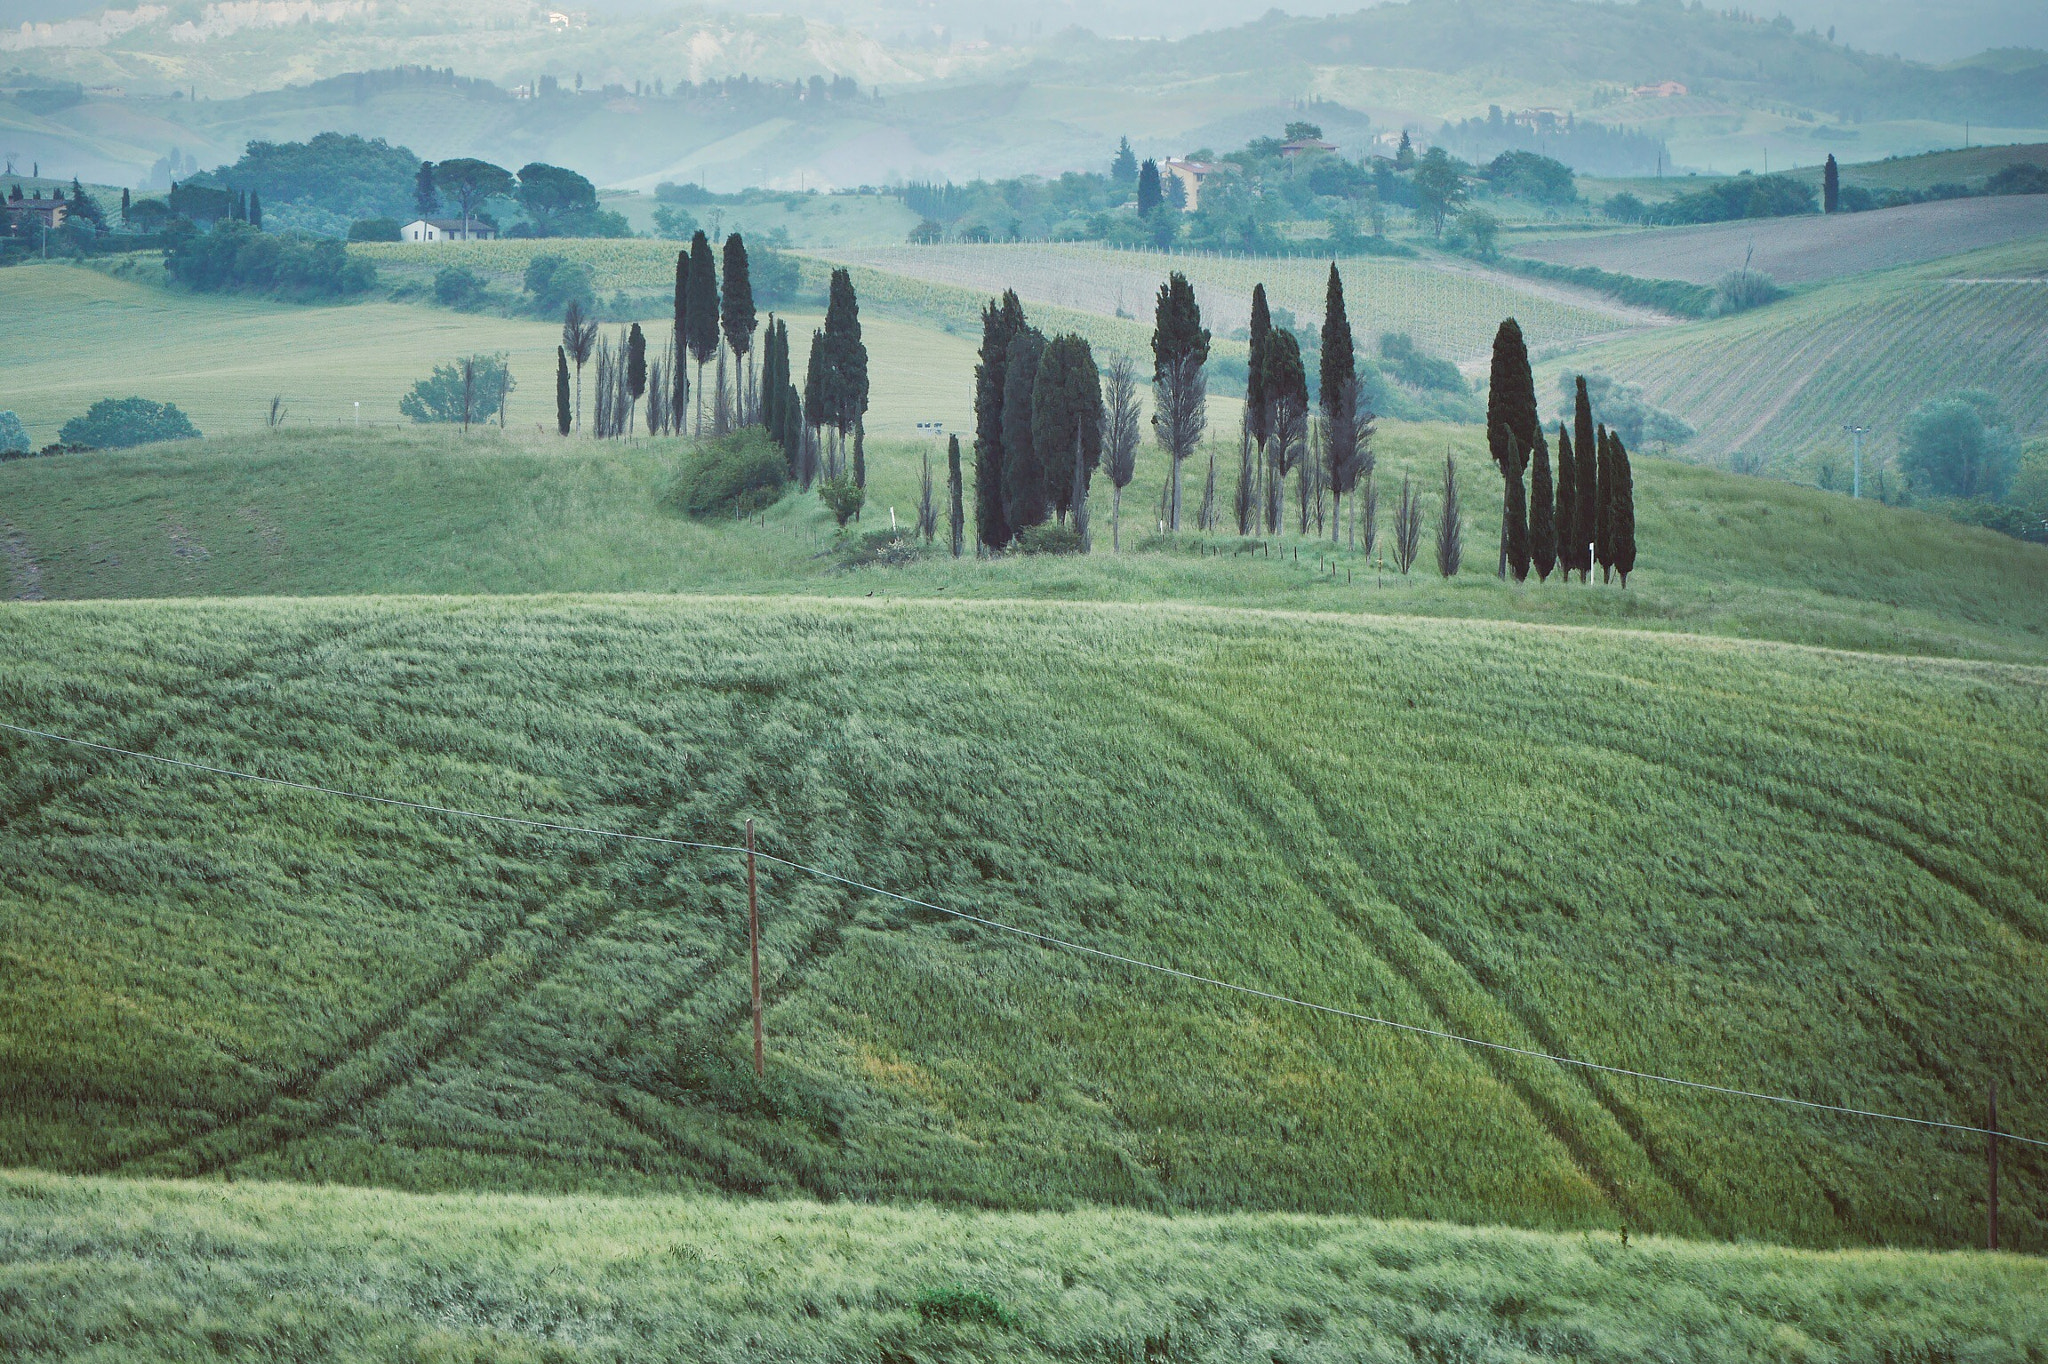 Panasonic Lumix DMC-G6 + LUMIX G VARIO 45-150/F4.0-5.6 sample photo. Tuscany landscape photography